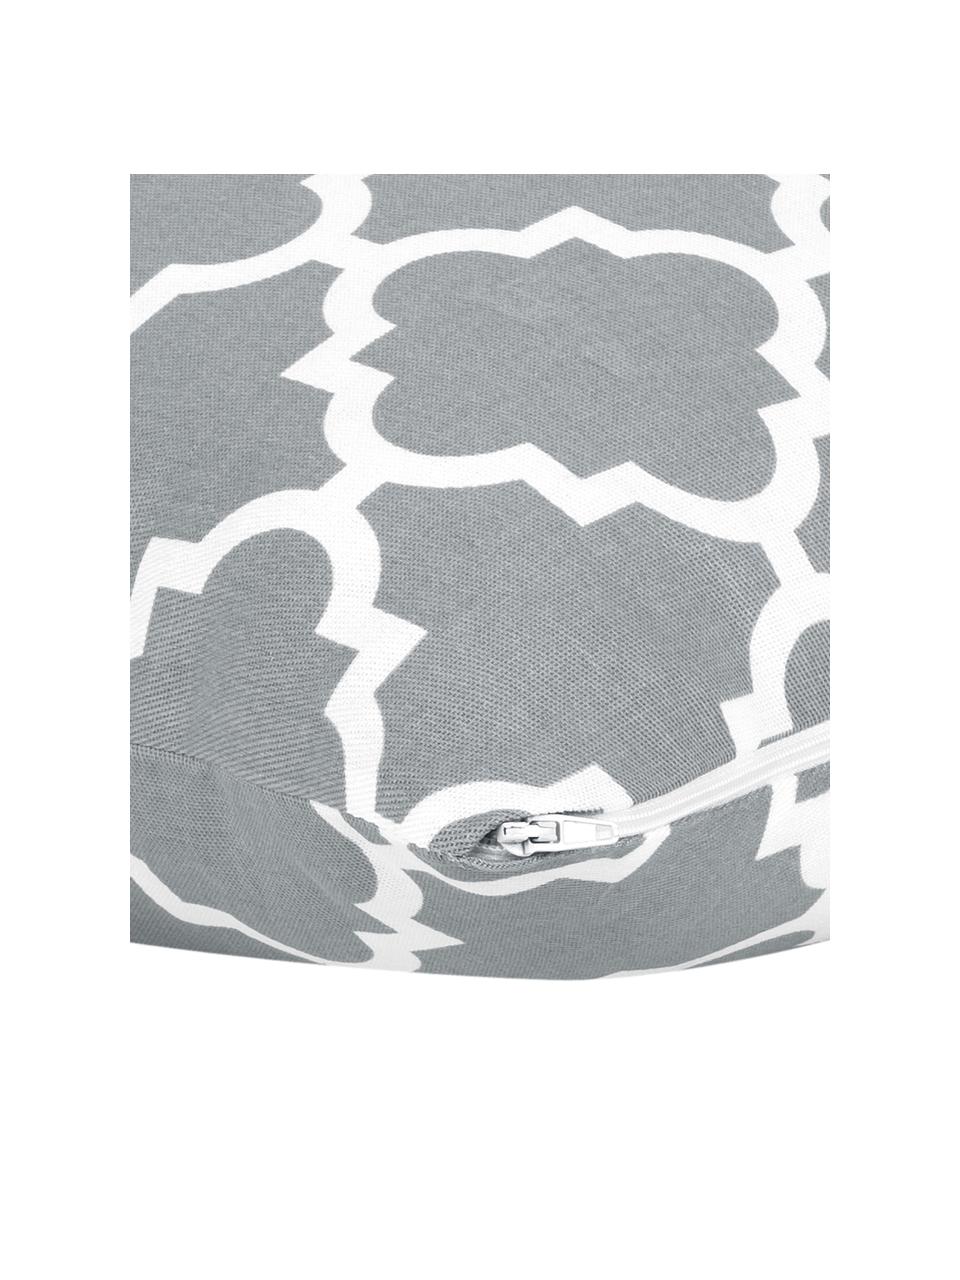 Kussenhoes Lana in grijs met grafisch patroon, 100% katoen, Grijs, wit, B 30 x L 50 cm